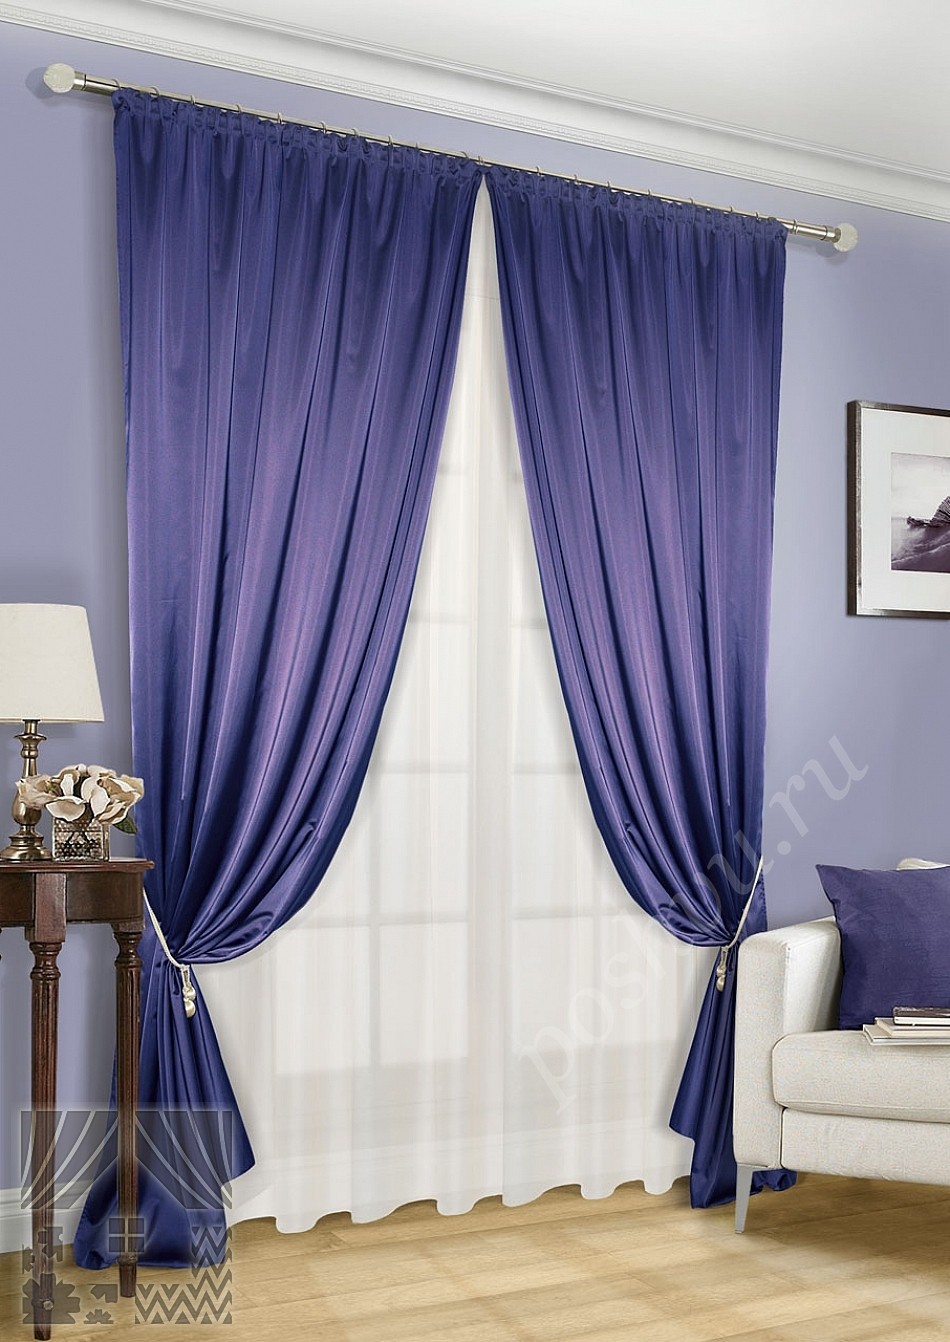 Роскошный комплект готовых штор синего цвета с тюлем в комплекте для гостиной или спальни